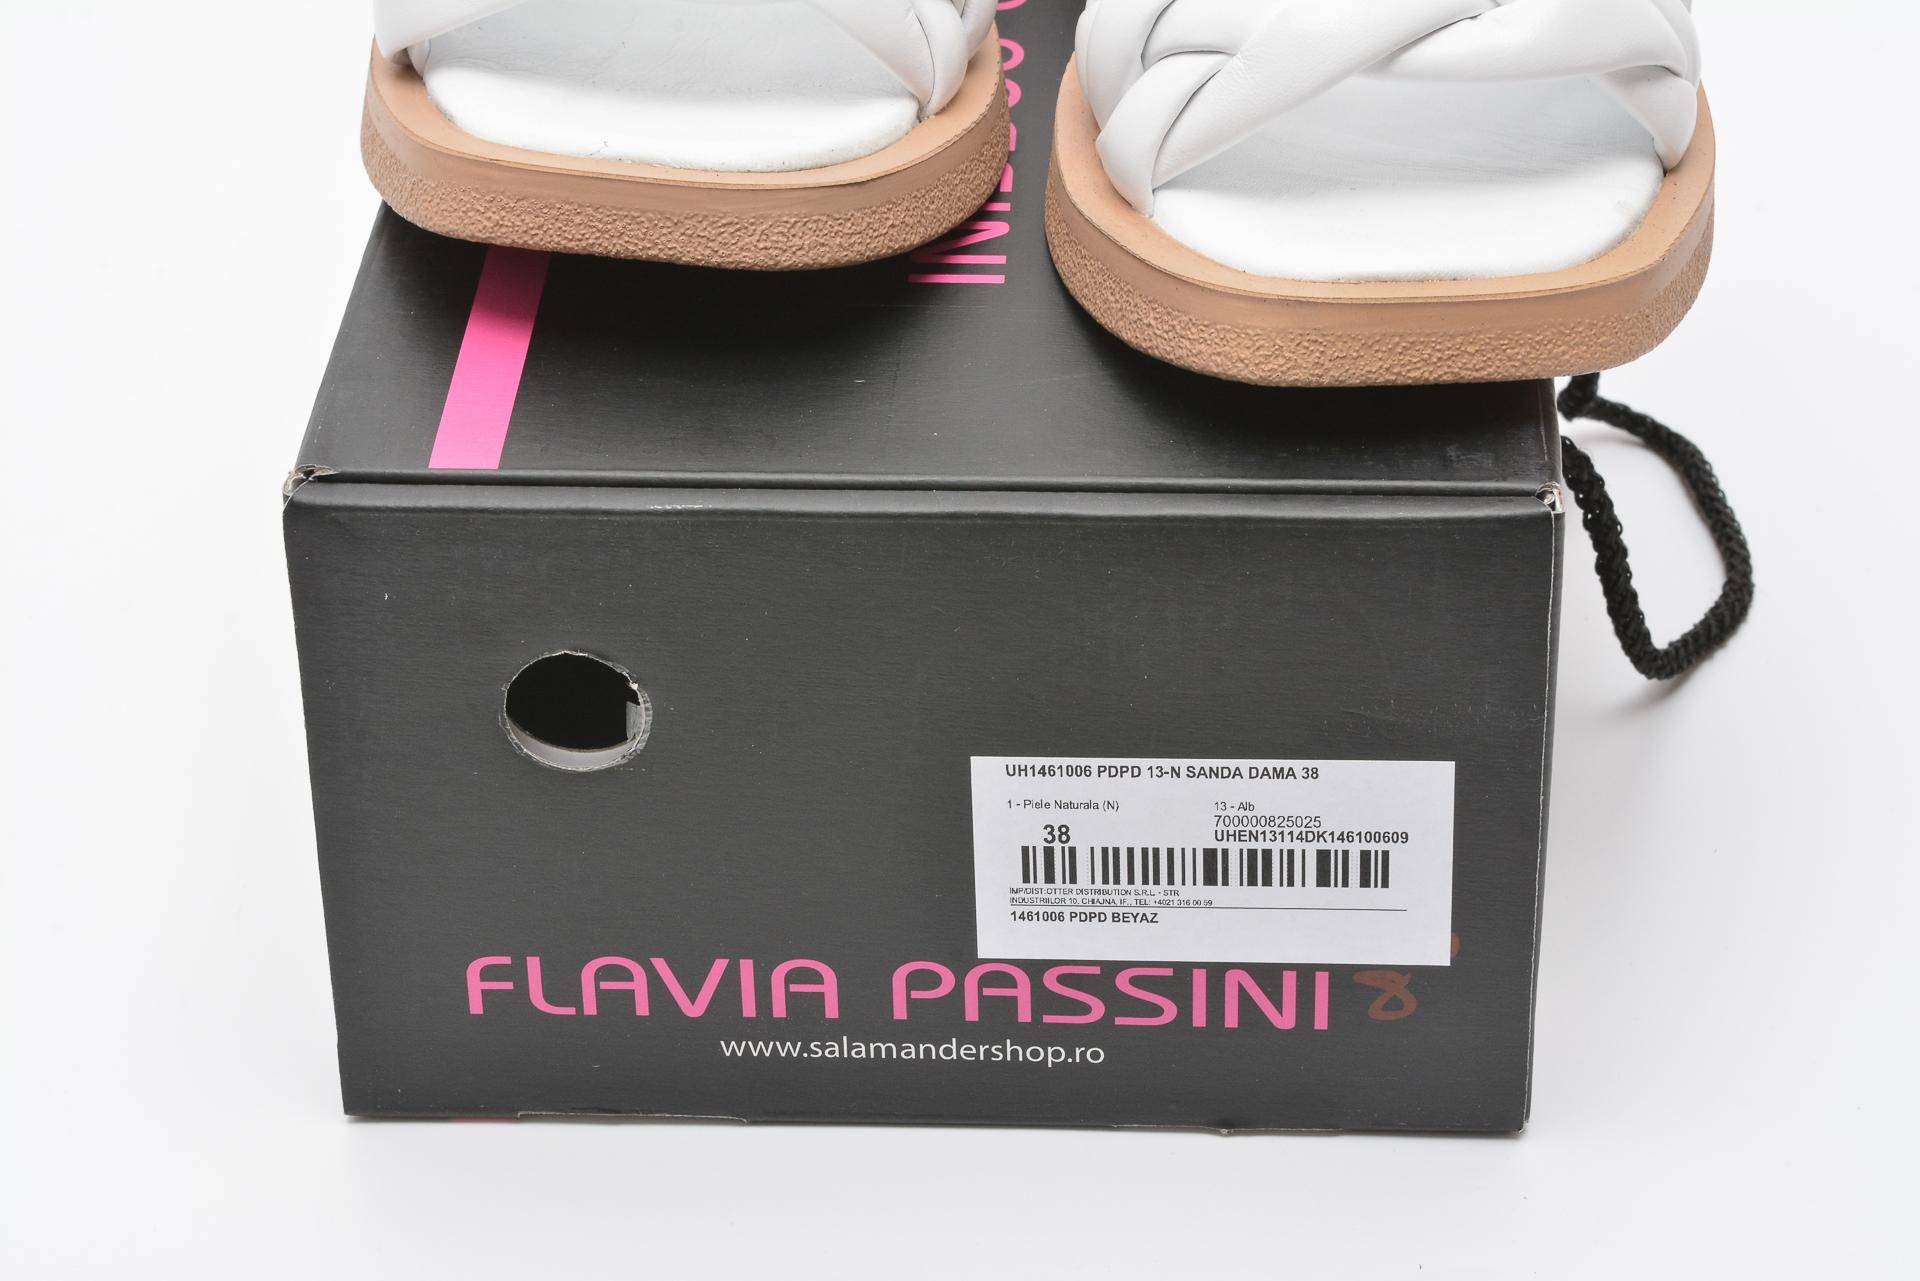 Sandale FLAVIA PASSINI albe, 1461006, din piele naturala Flavia Passini imagine 2022 13clothing.ro